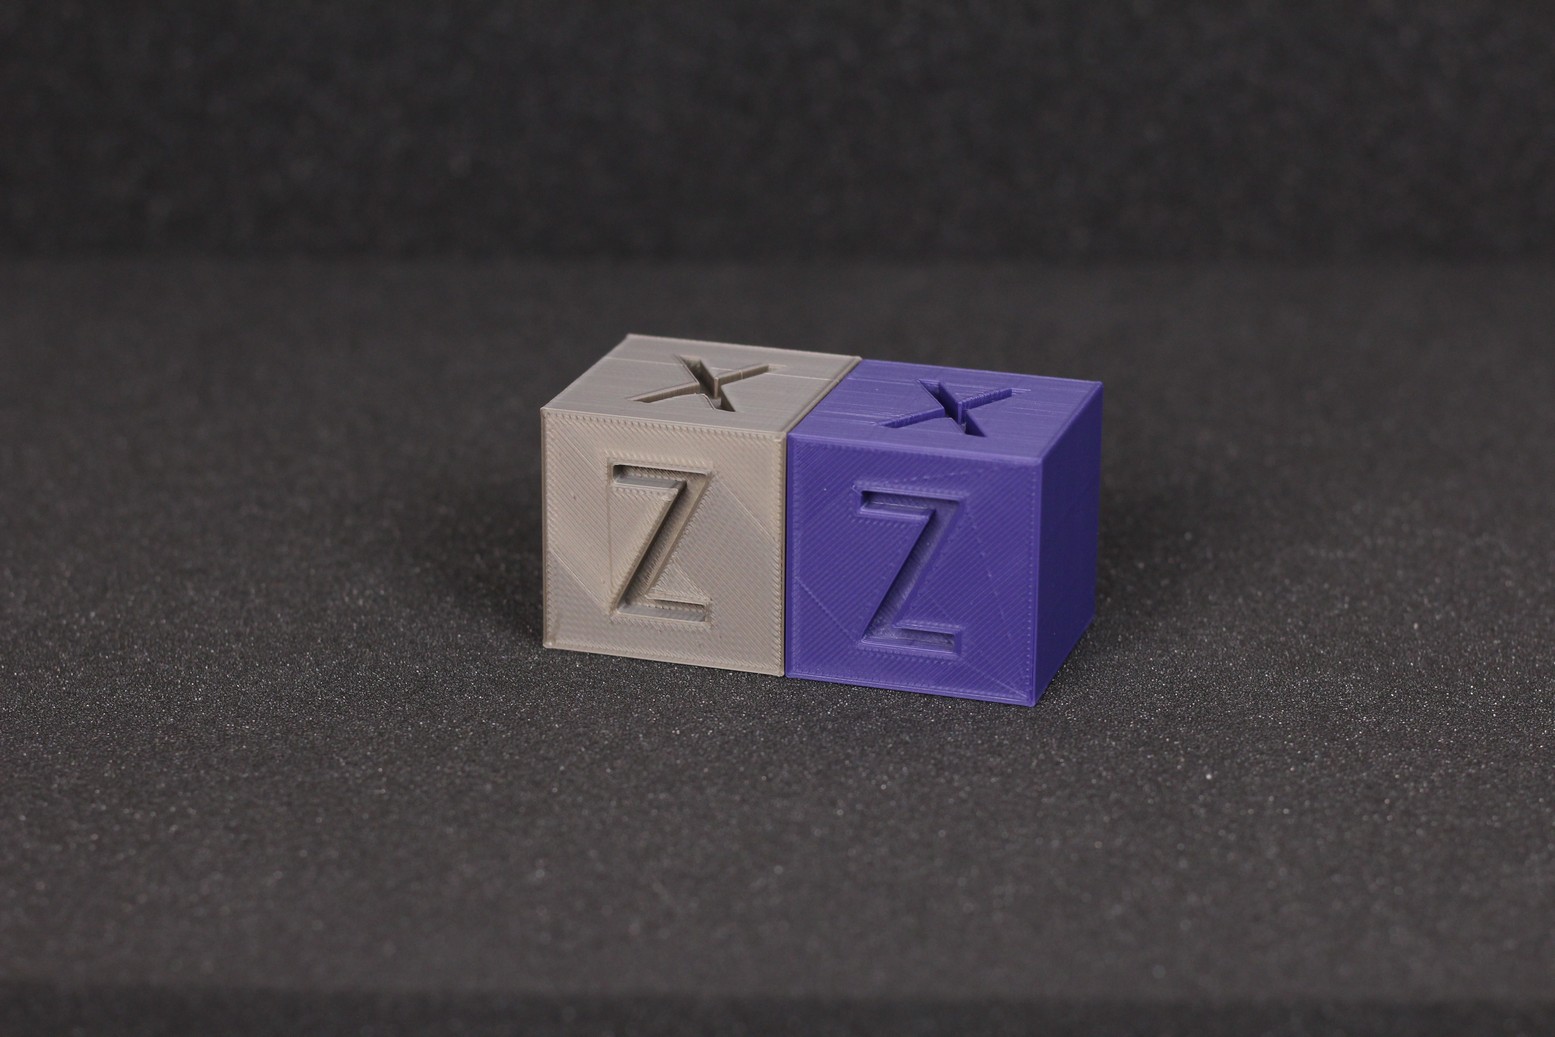 200 percent calibration cube QIDI X MAX Review 4 | QIDI X-MAX Review: Enclosed High-Temperature 3D Printer